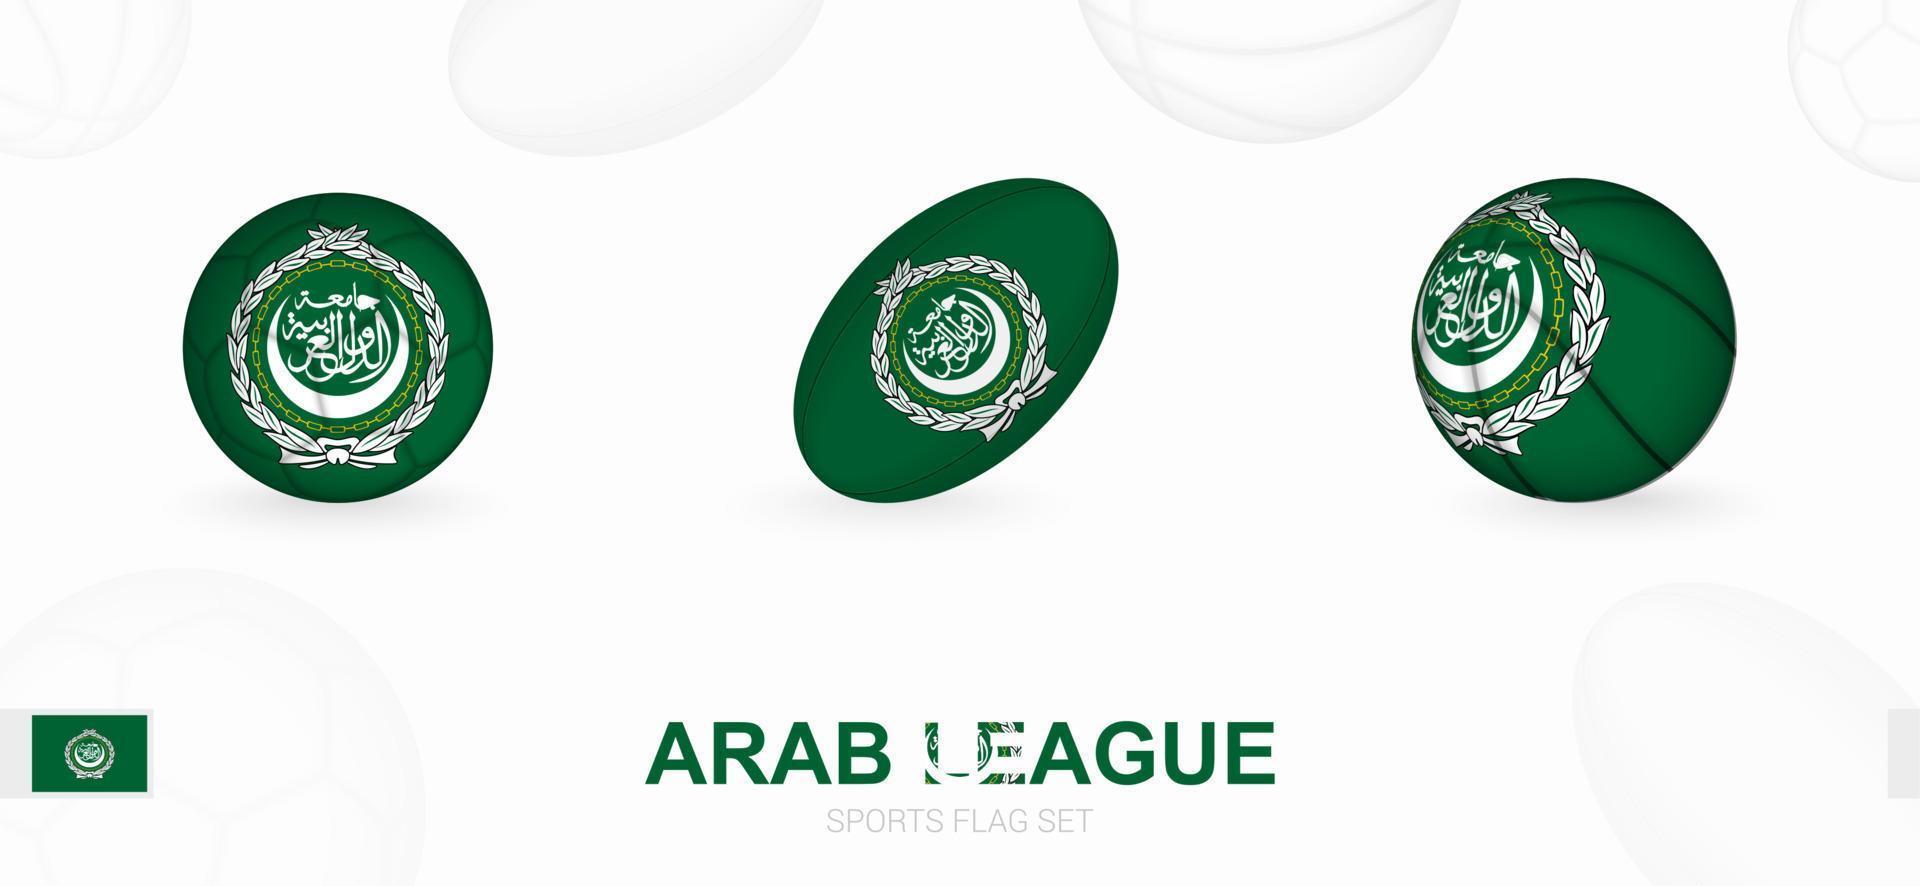 sport- pictogrammen voor Amerikaans voetbal, rugby en basketbal met de vlag van Arabisch liga. vector